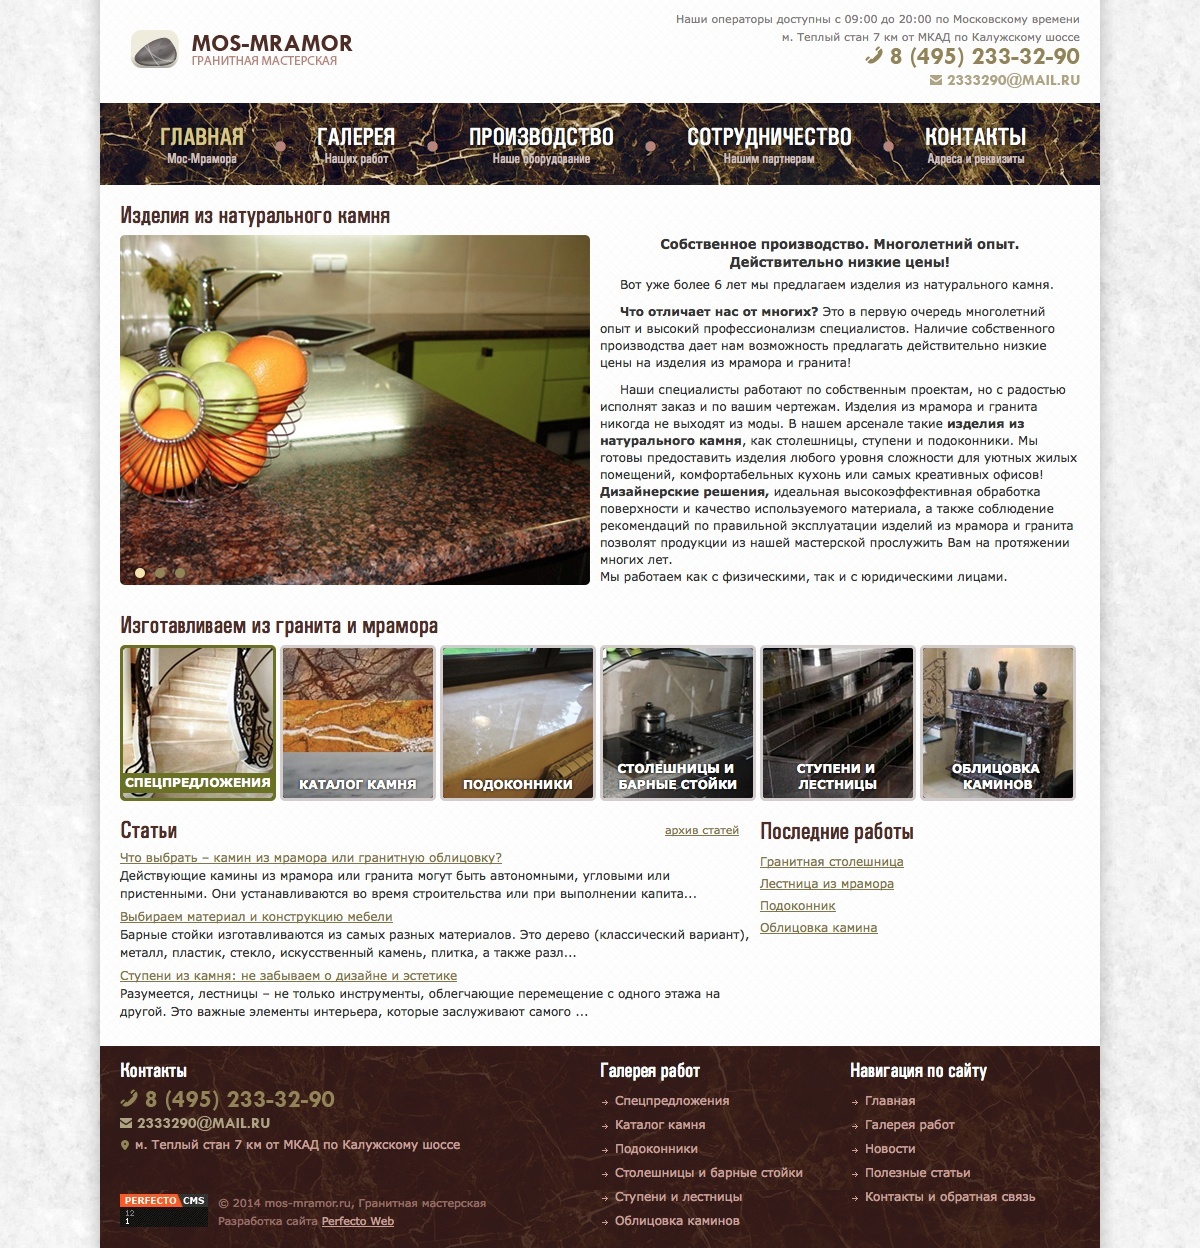 Mos-Mramor - granite workshop №1- Home page